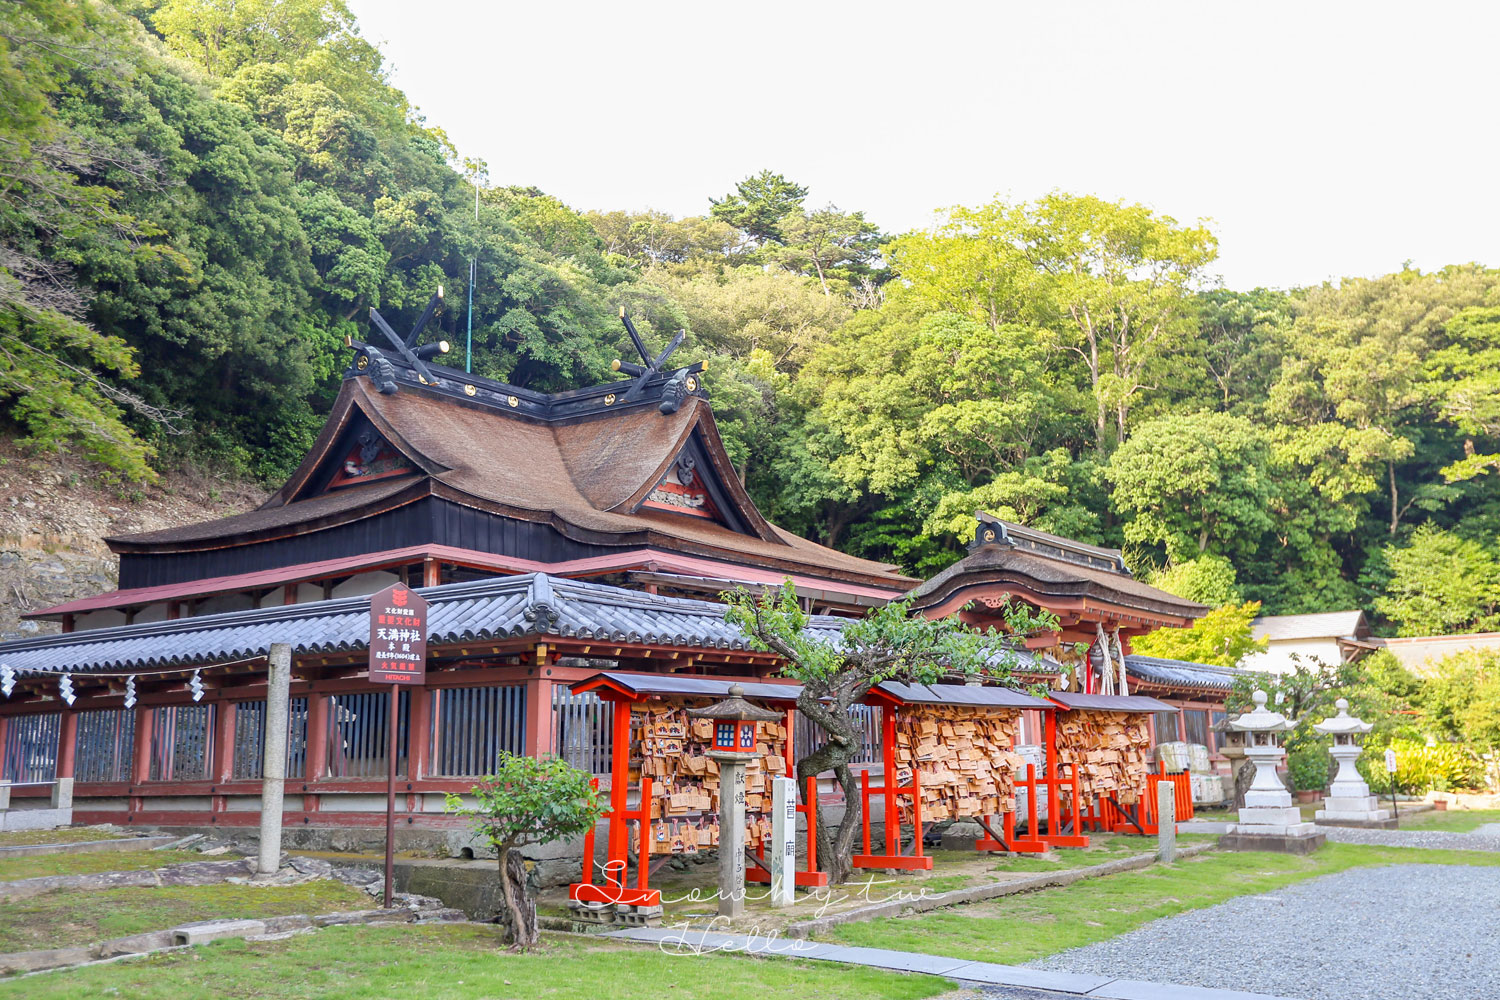 和歌山景點,日本三菅廟之一,歌浦天滿宮,和歌浦灣絕景,日本旅遊,和歌山自由行,和歌山